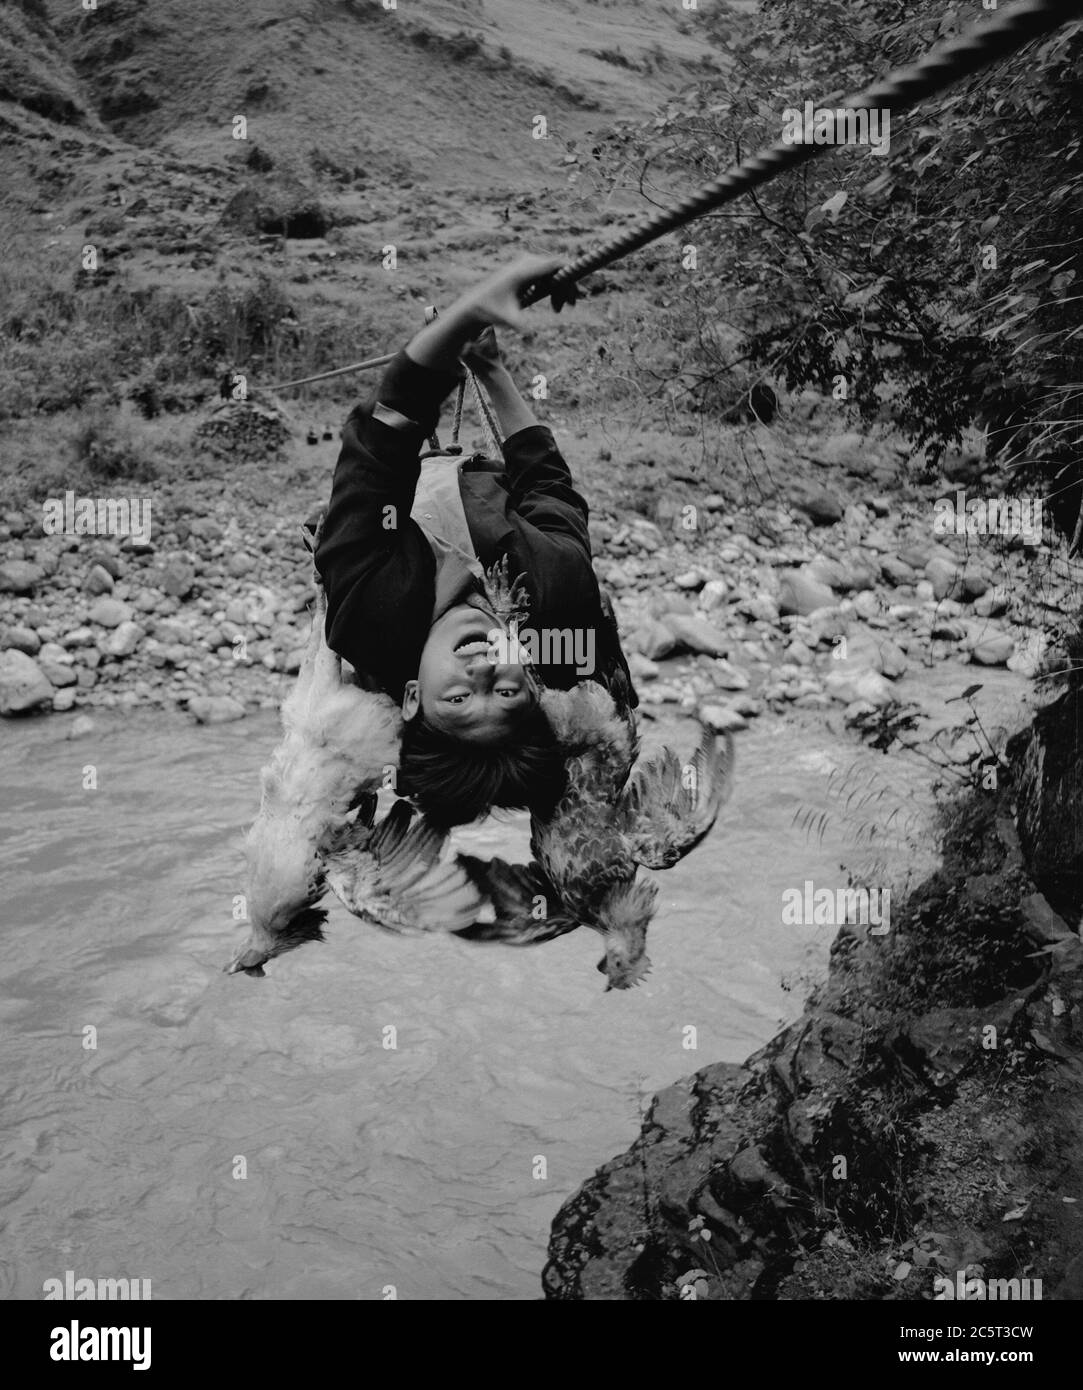 Butuo. Juli 2020. Das am 21. März 2006 aufgenommene Foto zeigt einen Dorfbewohner, der mit einem Kabel am Xixi Fluss im Dorf Abuluoha, südwestlich der Provinz Sichuan, vorbeikommt. UM MIT XINHUA SCHLAGZEILEN VOM 5. JULI 2020 zu GEHEN Quelle: Lin Qiang/Xinhua/Alamy Live News Stockfoto